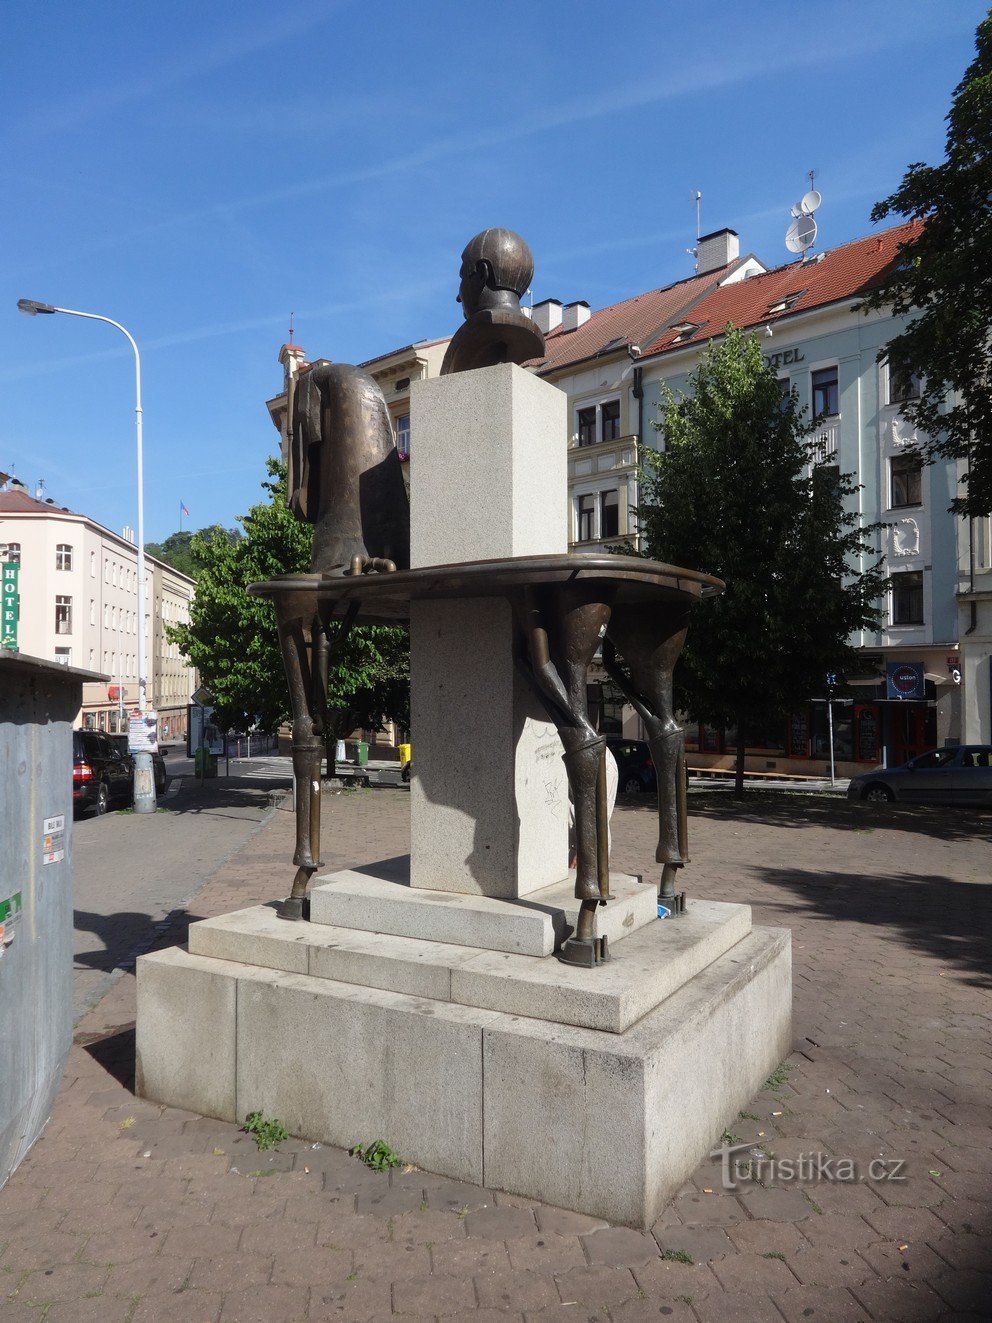 La statue équestre de Jaroslav Hašek et du Bon Soldat Švejk